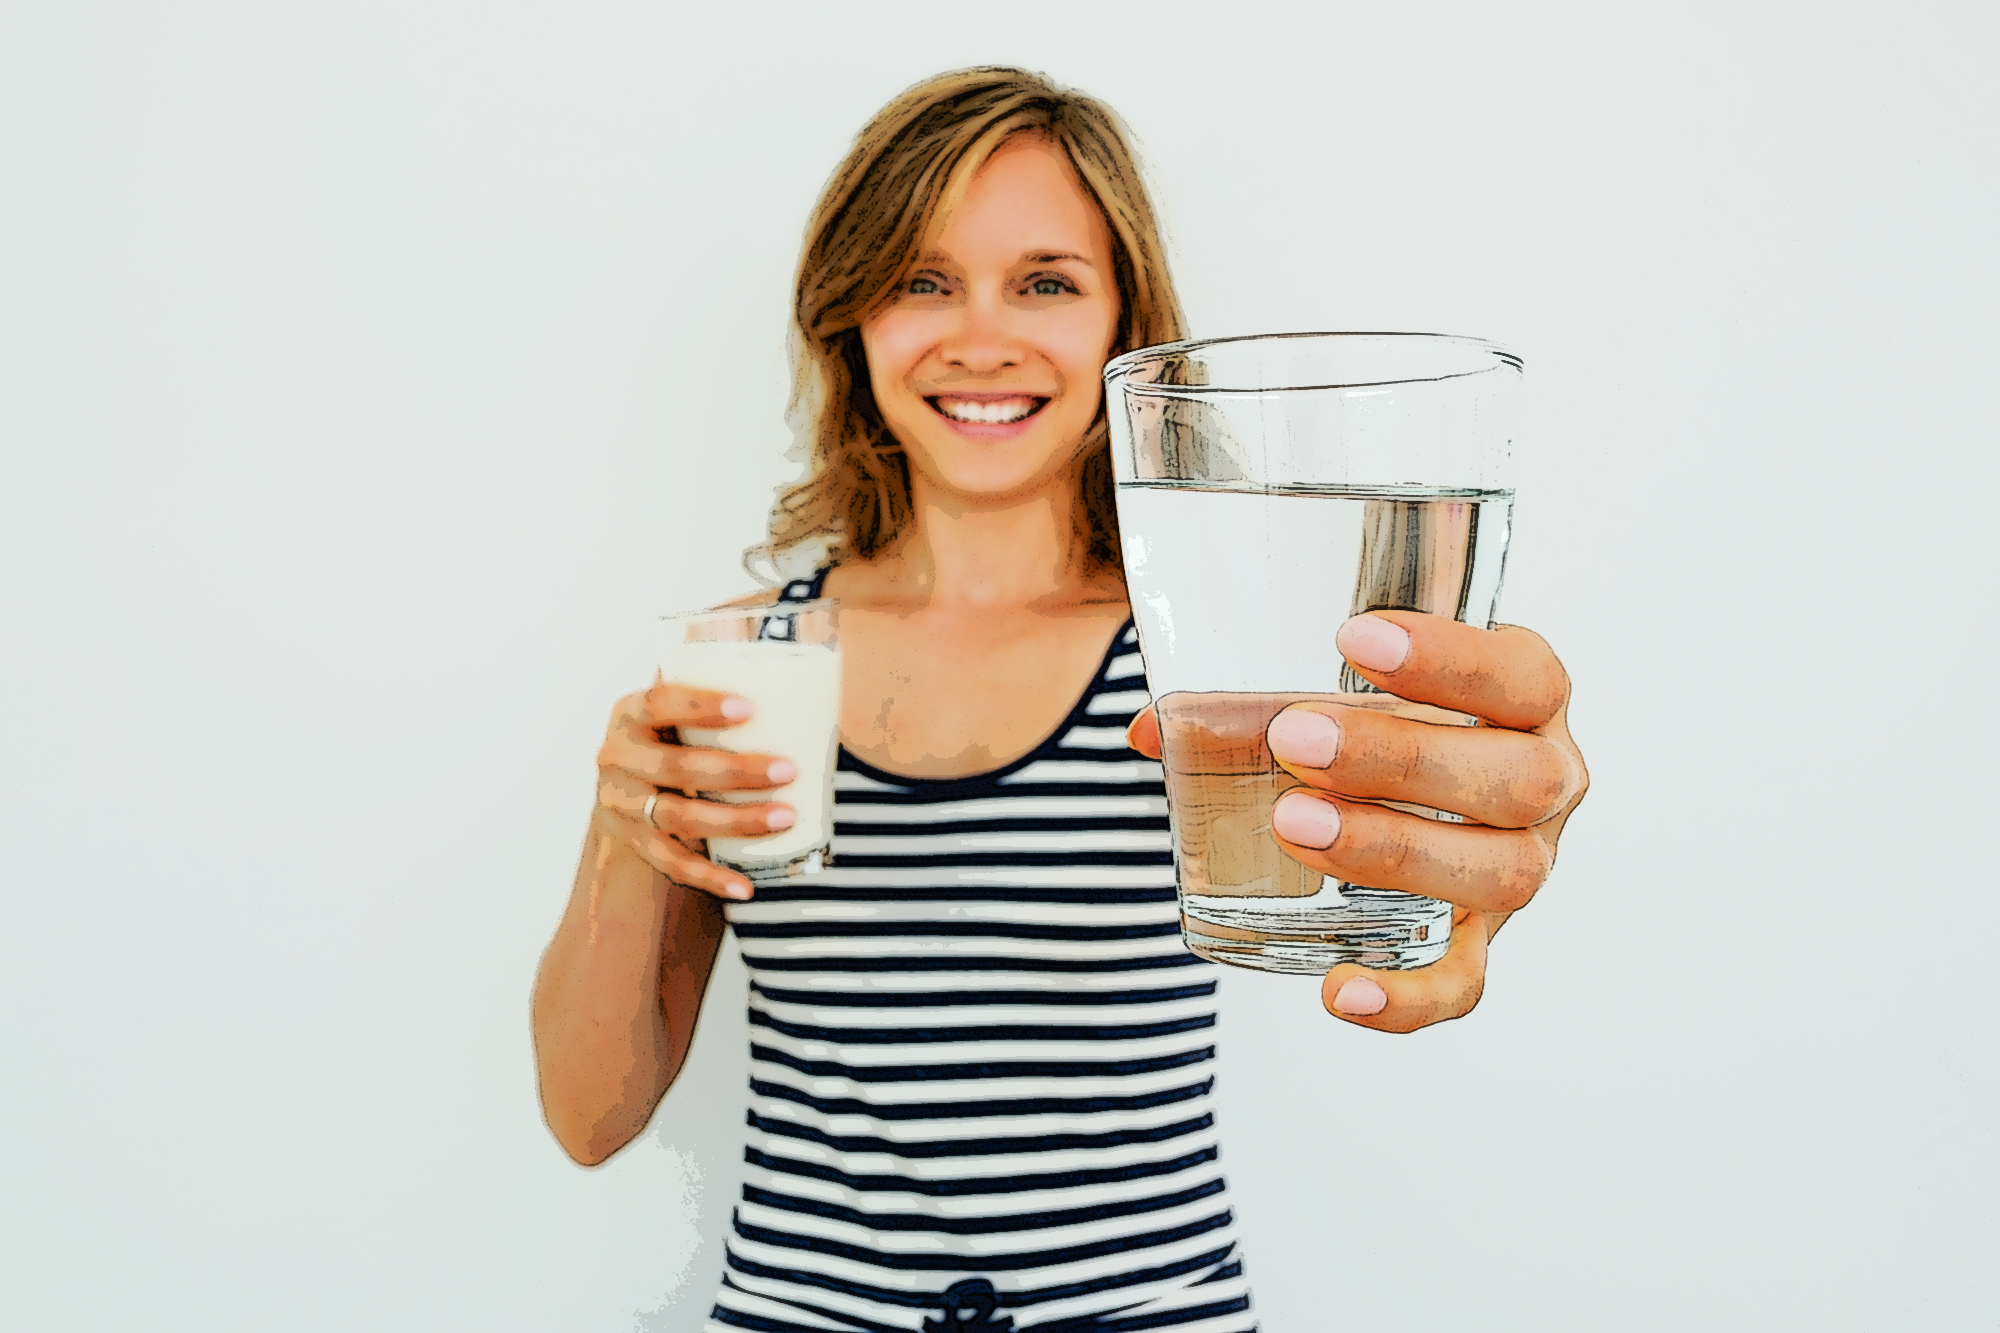 Выпейте стакан воды 1. Девушка со стаканом воды. Человек со стаканом воды. Фотосессия со стаканом воды. Женщина пьет воду.